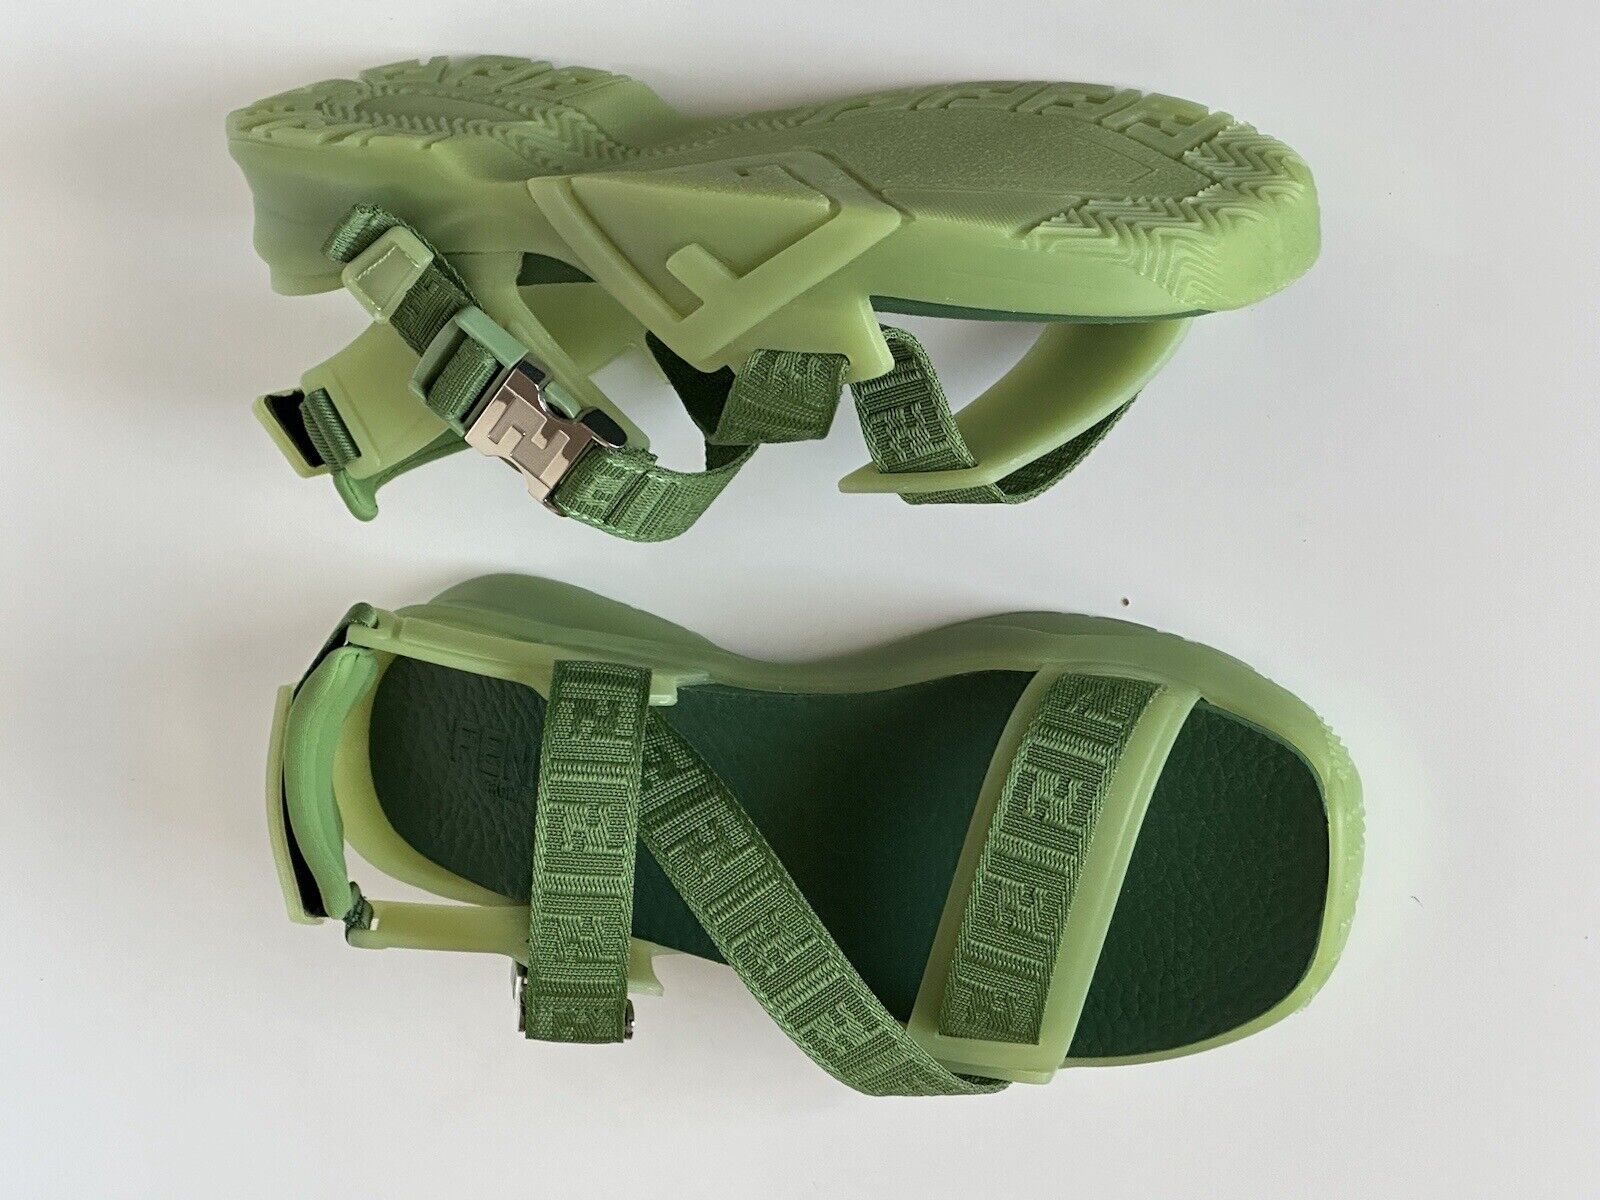 Мужские сандалии Fendi с ремешками Fendi, базилик, 895 долларов США, 10 США/9 Великобритания, Италия 7X1503 